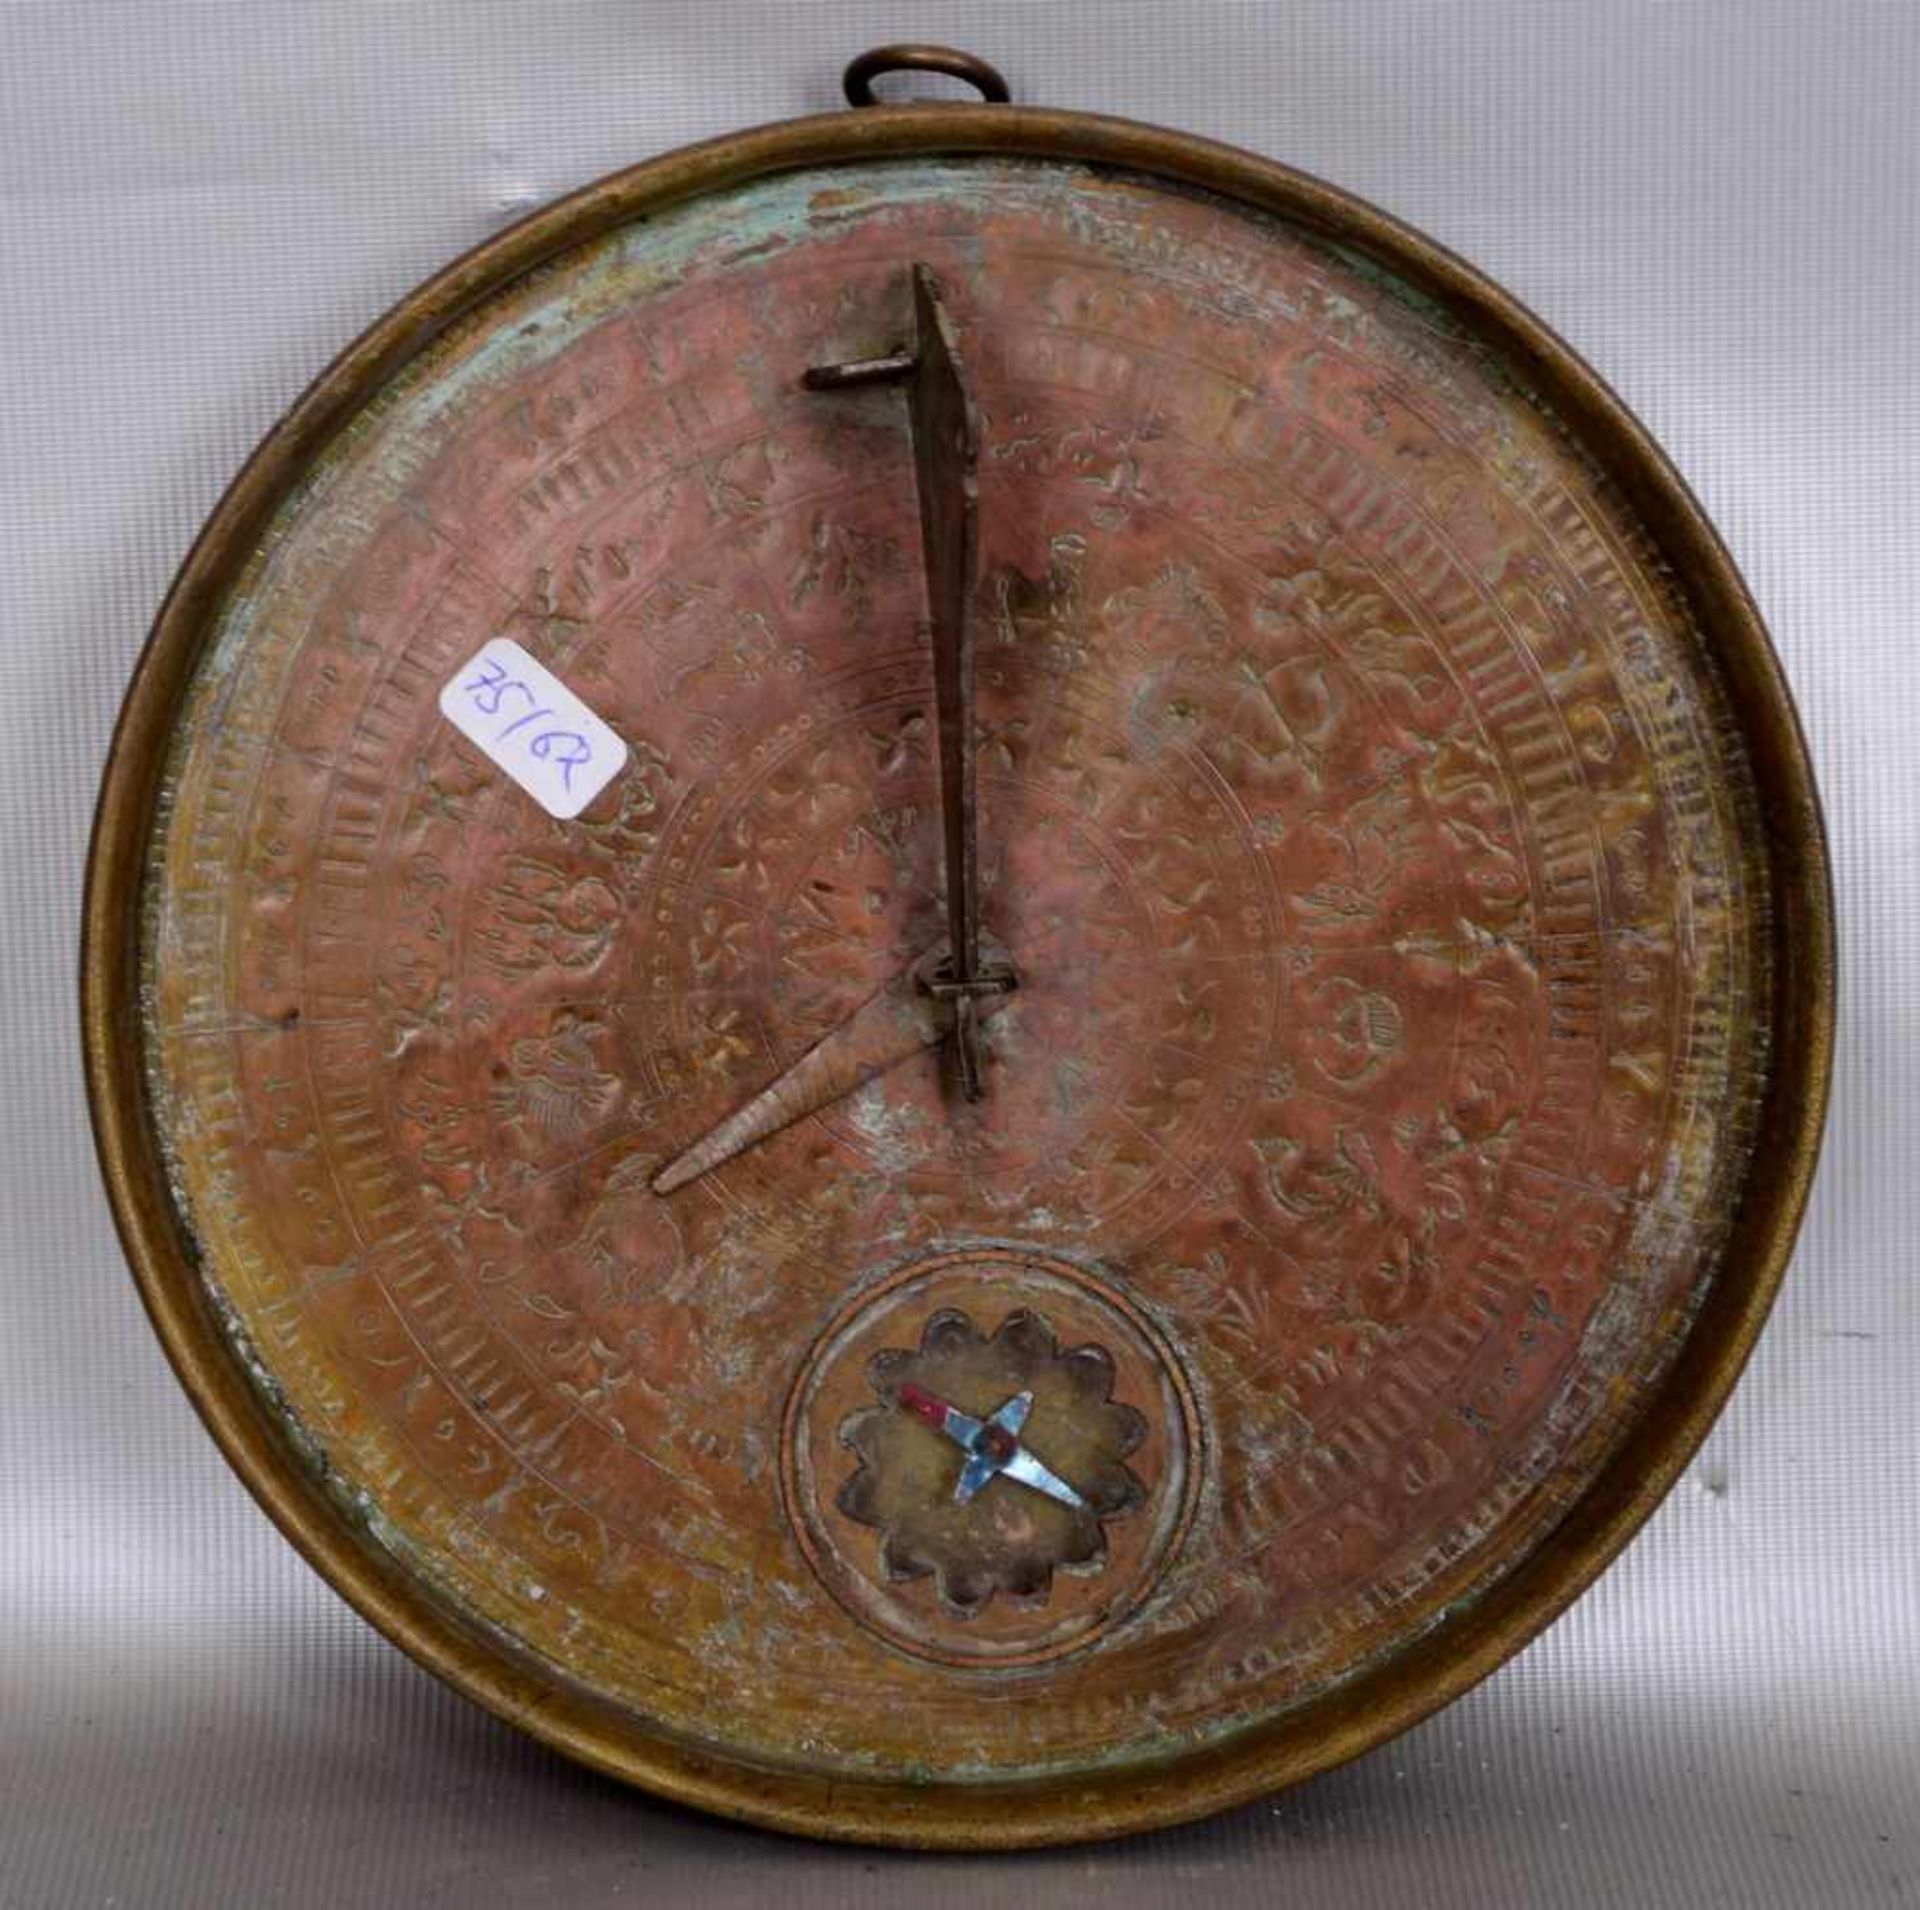 KompassKupfer, rund, mit Sonnenuhr, Dm 17 cm